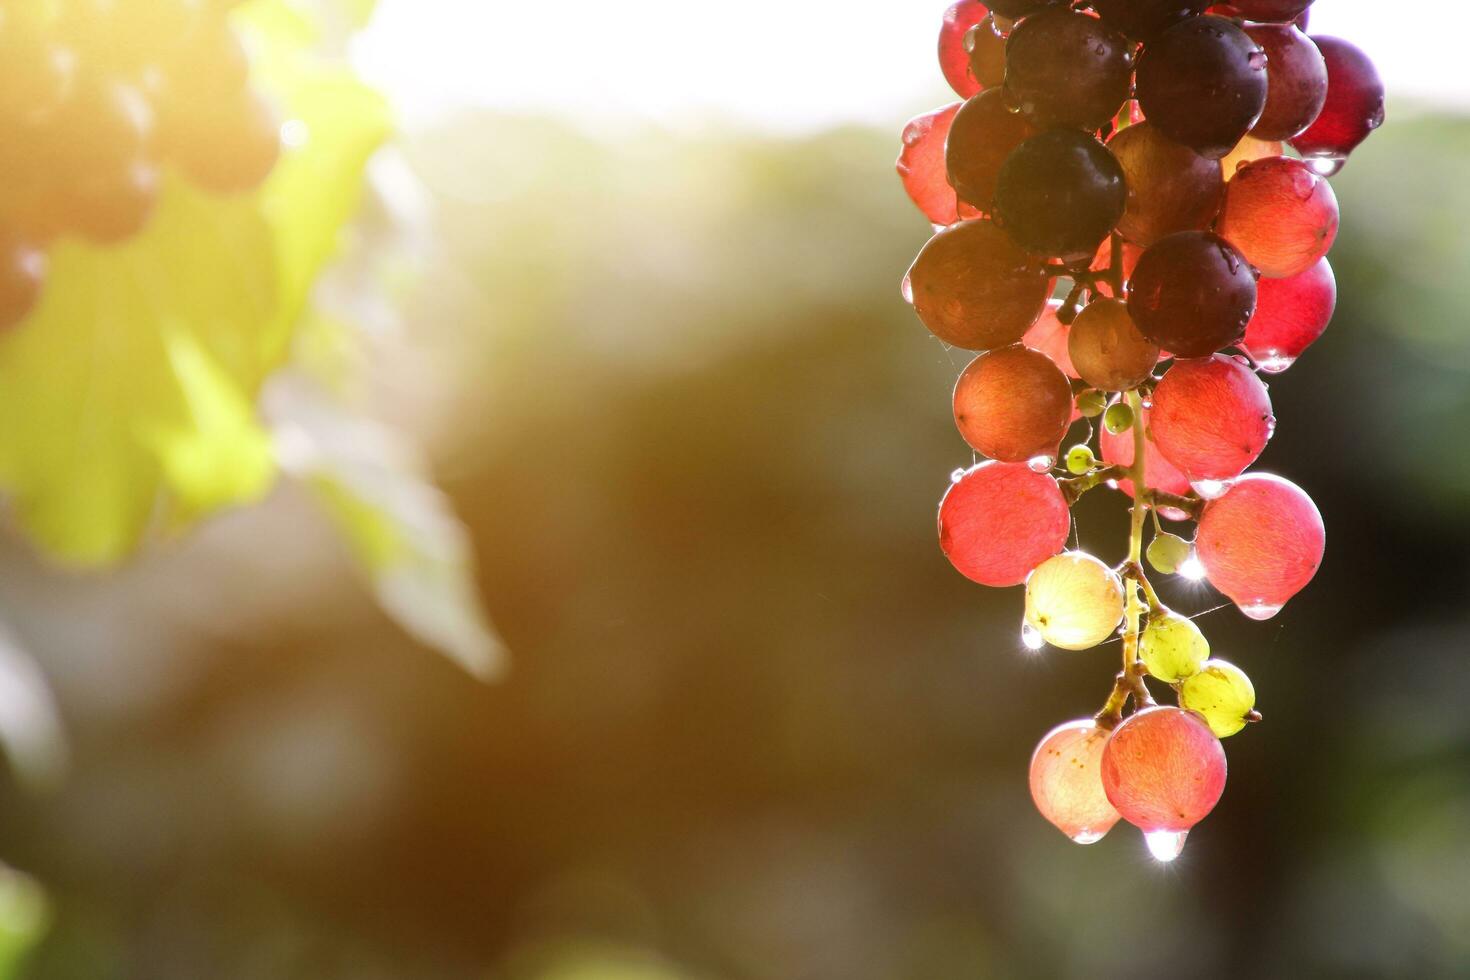 maduro uvas colgado en viñedos de uva arboles foto